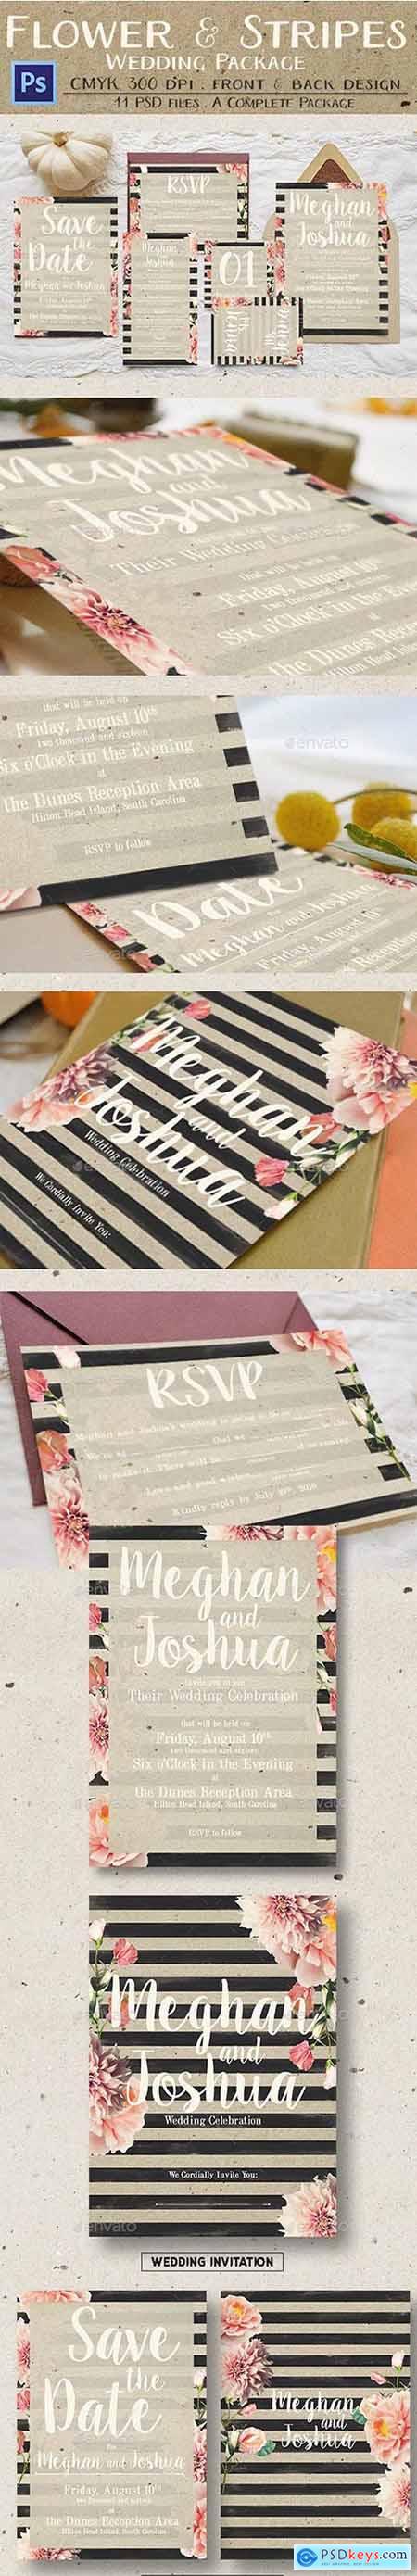 Rustic Flower & Stripes Wedding Package